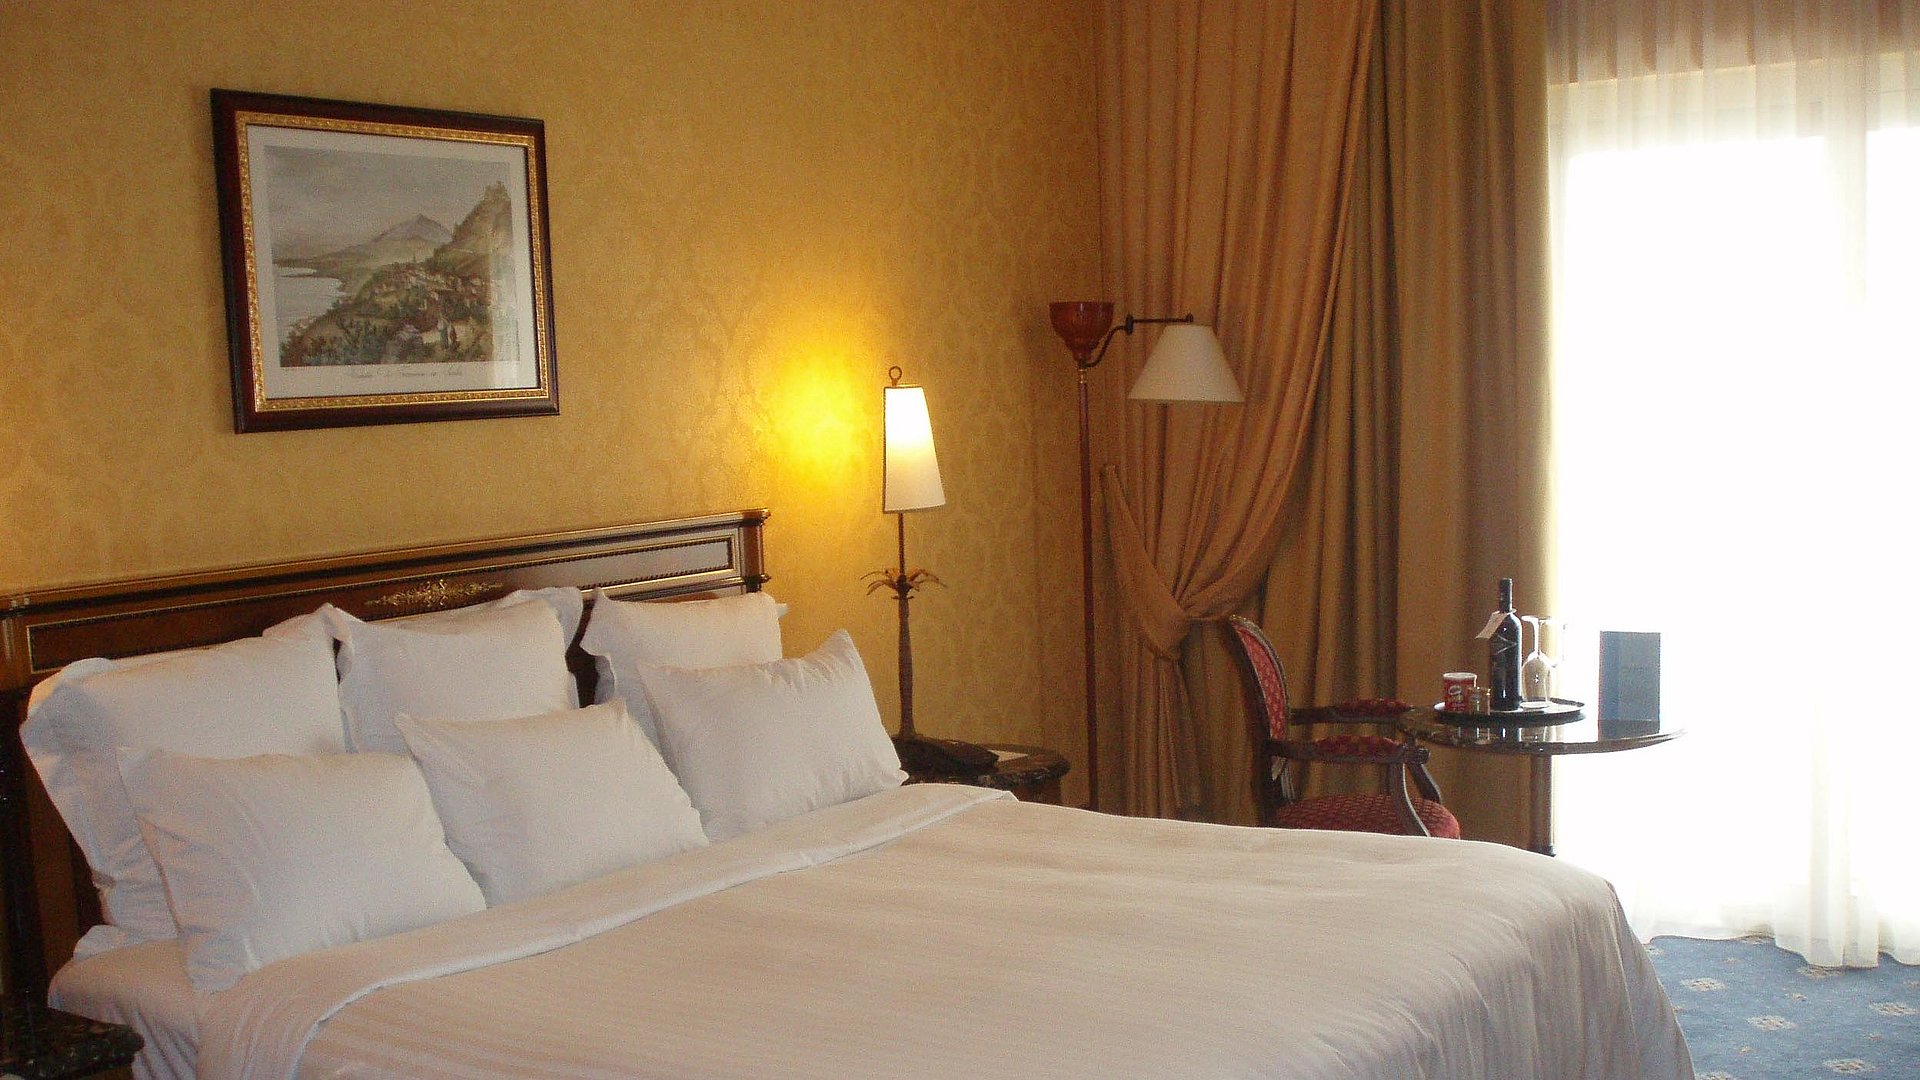 Pauschalangebote für eine Woche in Unterfranken - sehr ordentliches Hotelzimmer mit großem Bett und warmer Nachtlampe wird durch weiße Gardinen durchleuchtet 